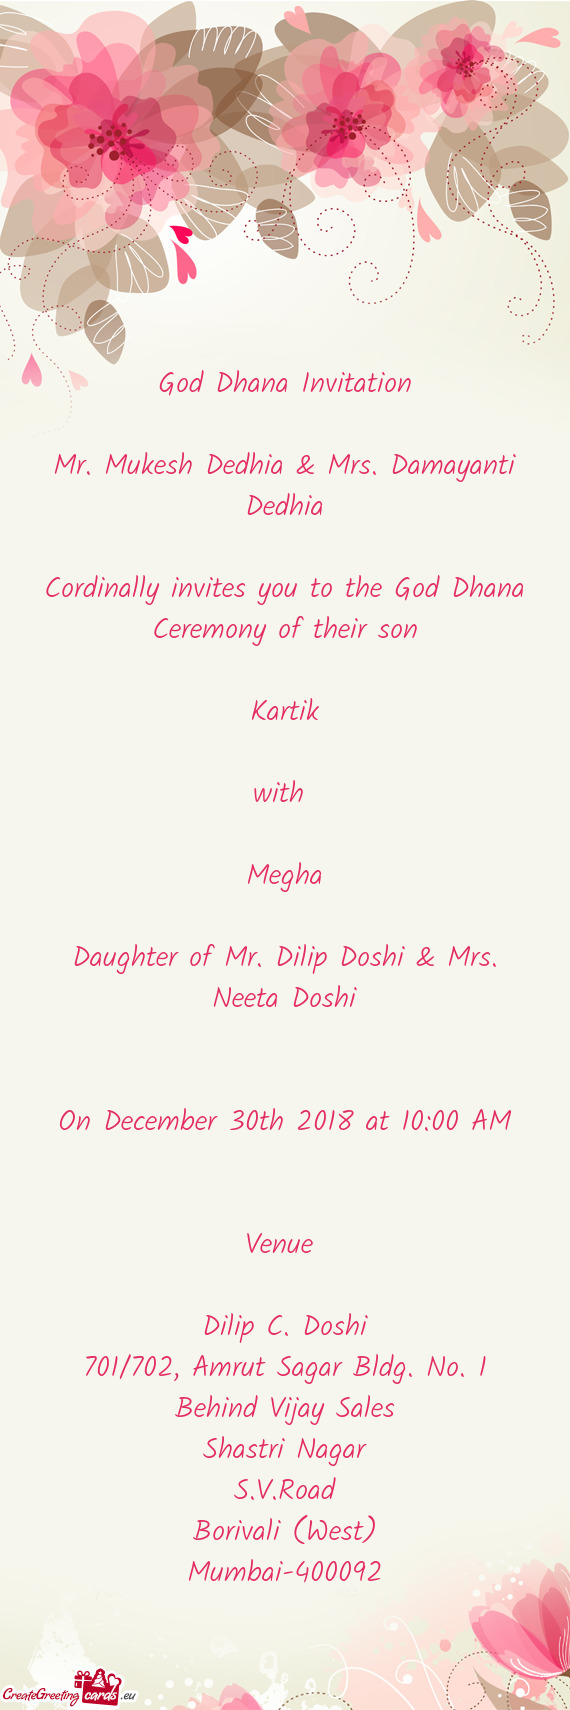 God Dhana Invitation
 
 Mr